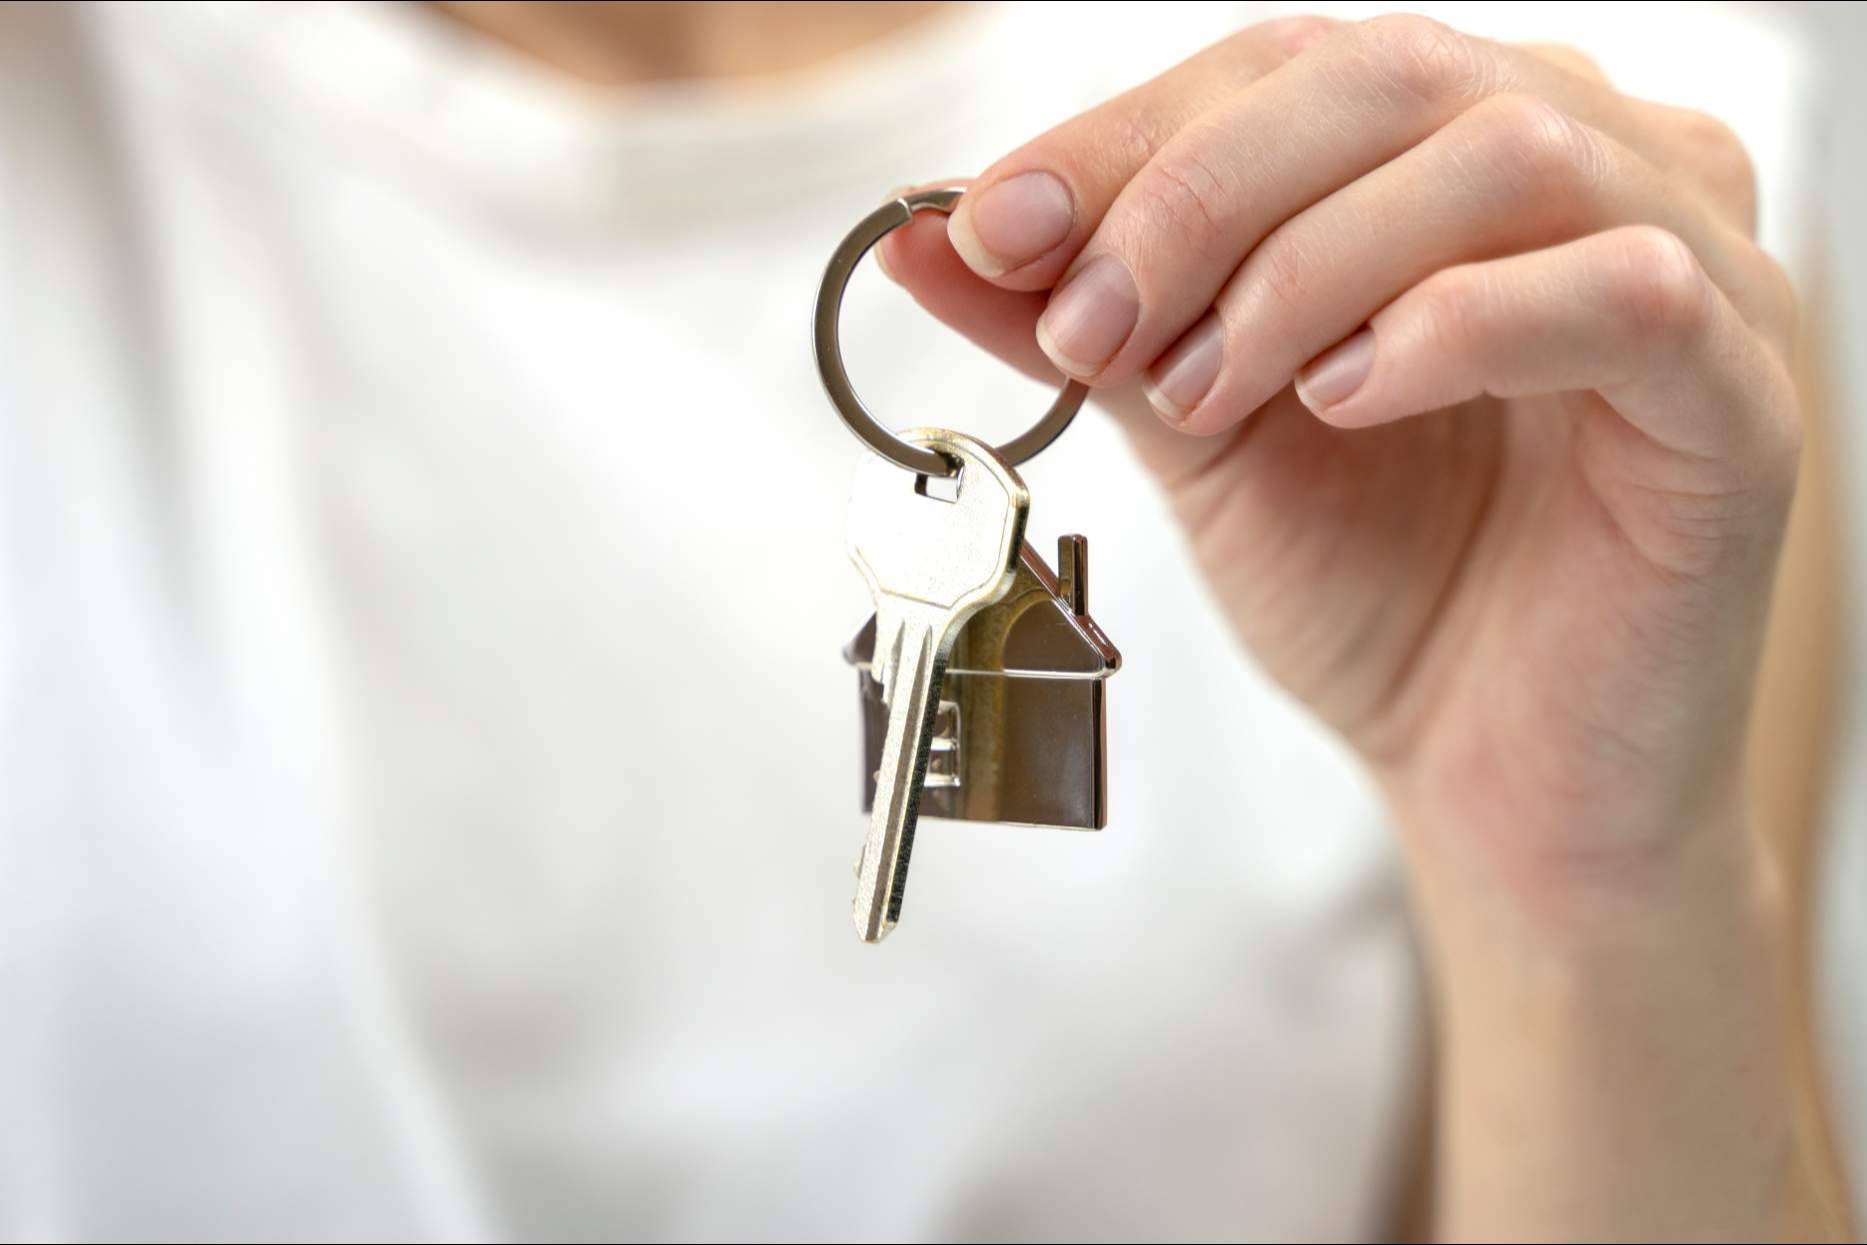 La guía para vender de D&A Inmobiliaria proporciona los secretos para vender una vivienda